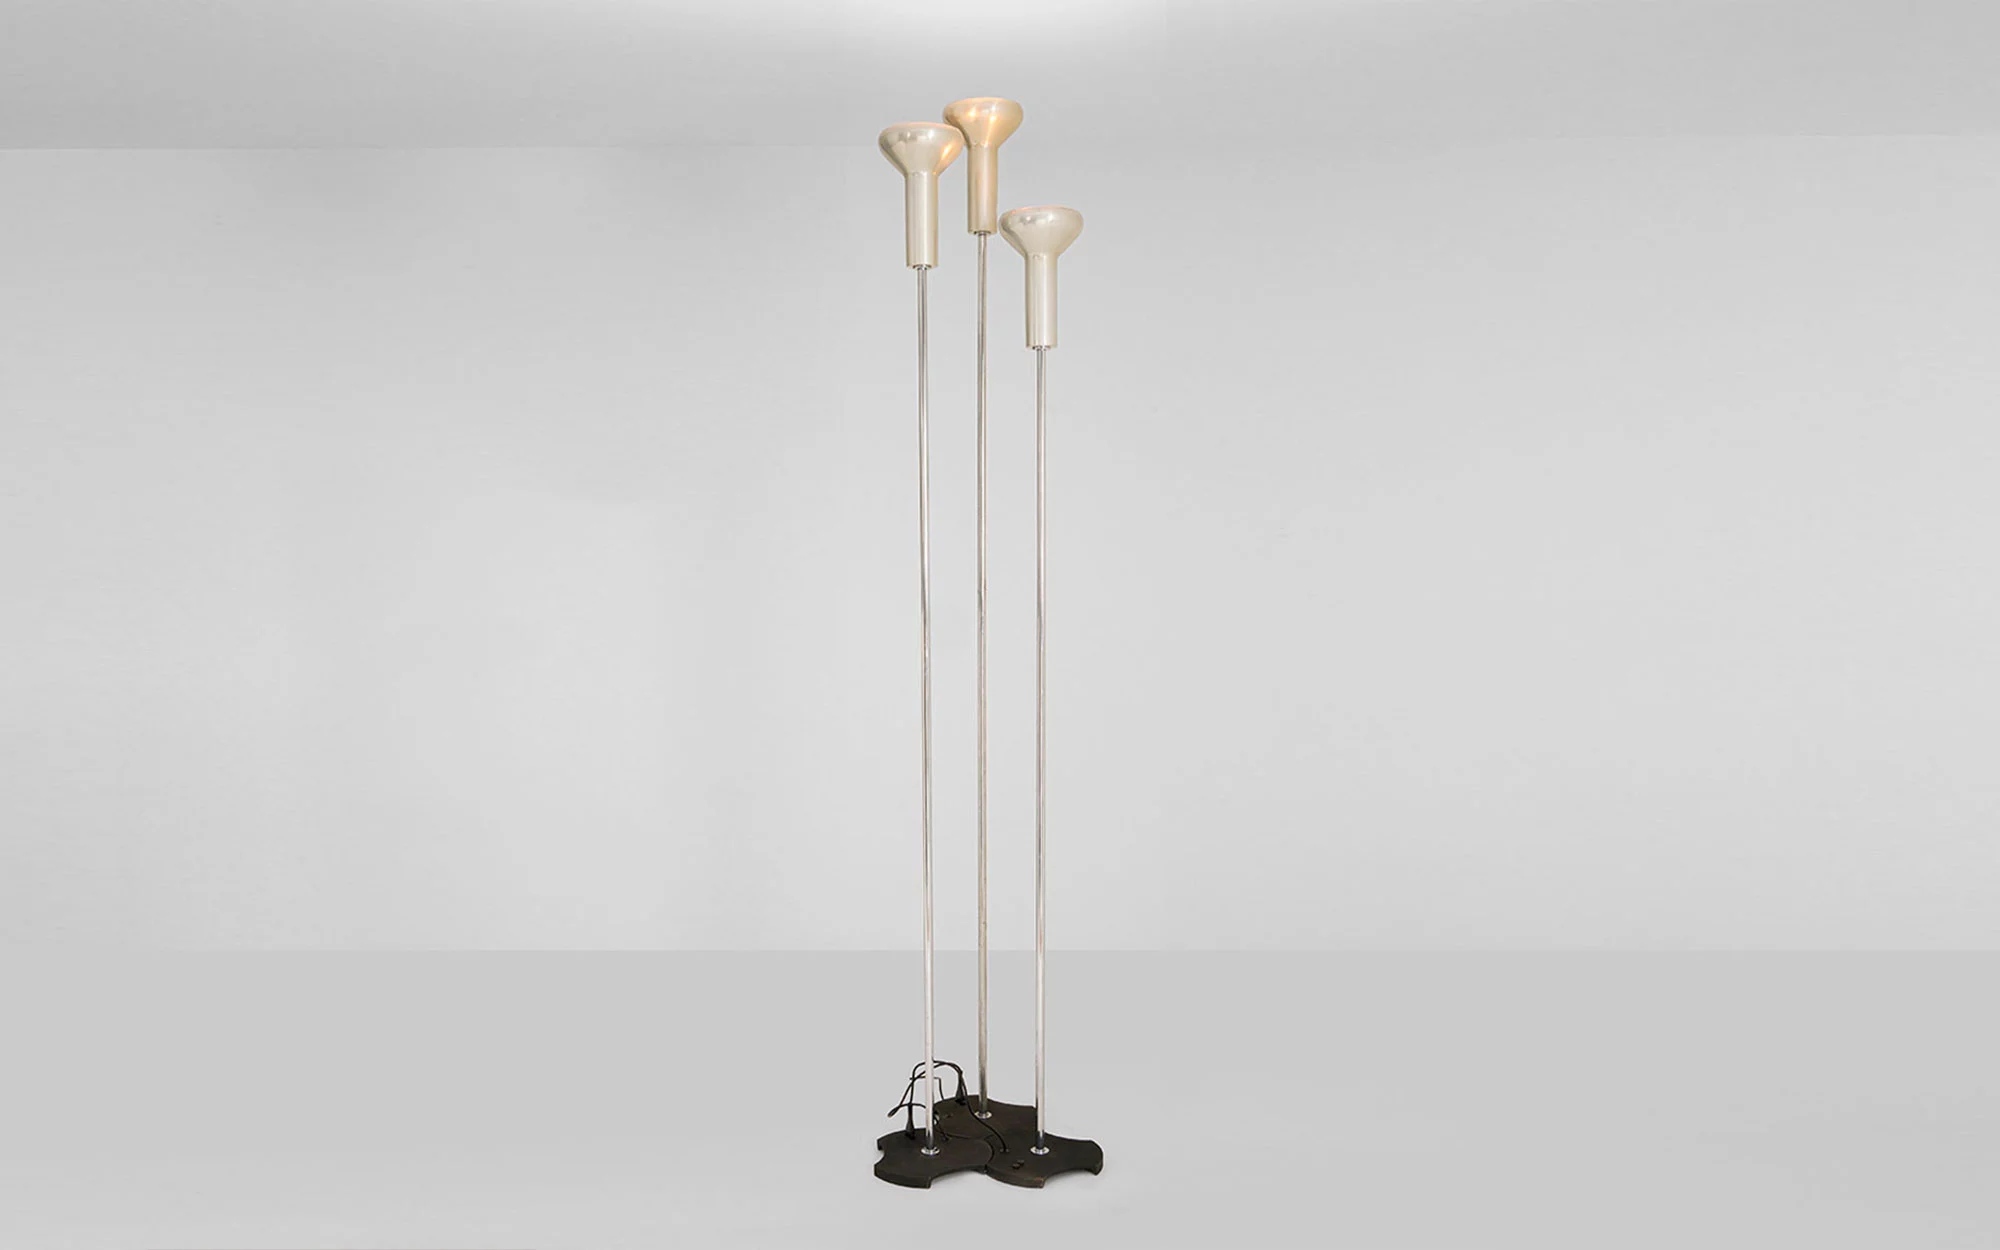 1073/3 - Gino Sarfatti - Pendant light - Galerie kreo